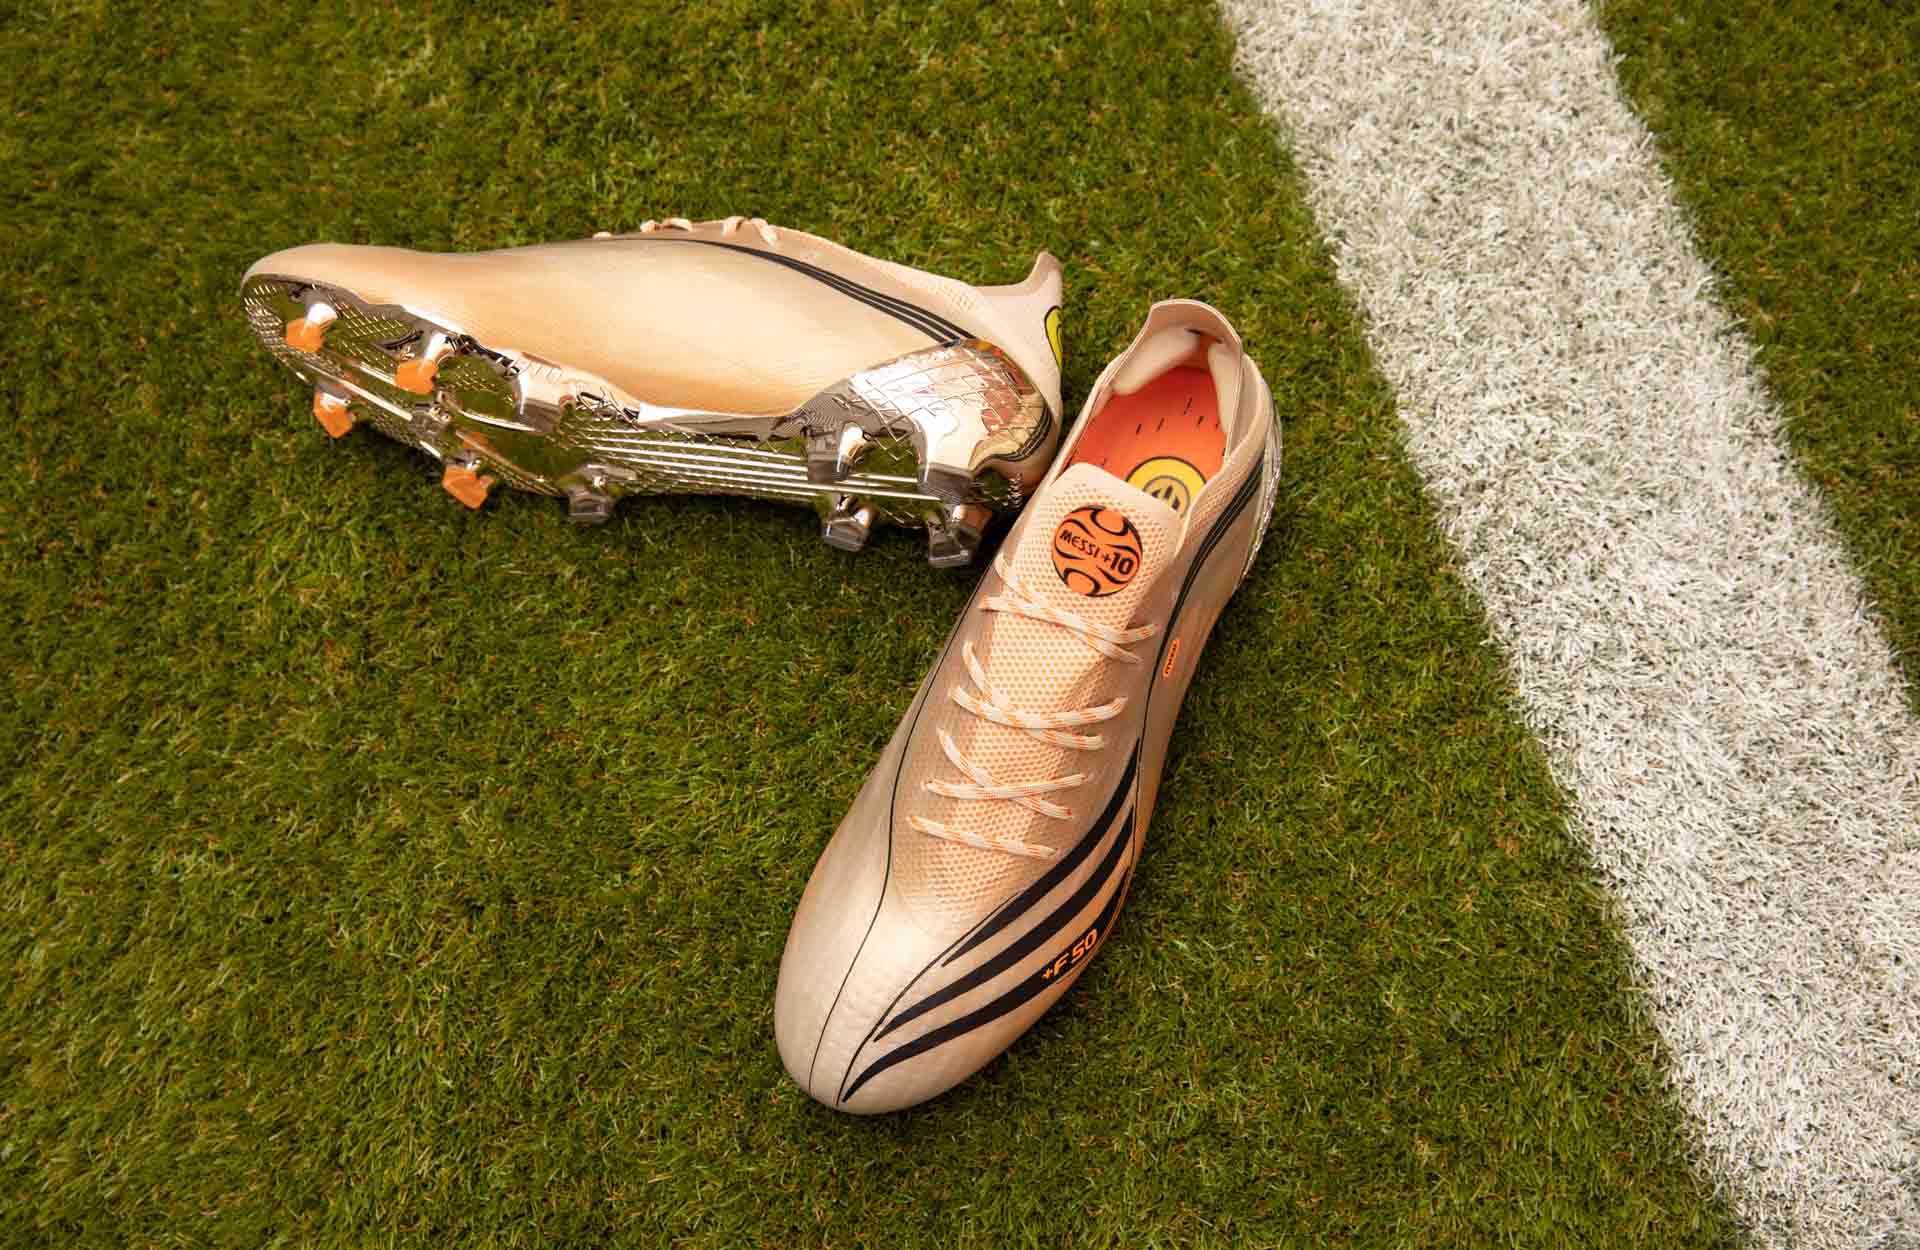 Giới thiệu giày đá bóng Messi El Retorno